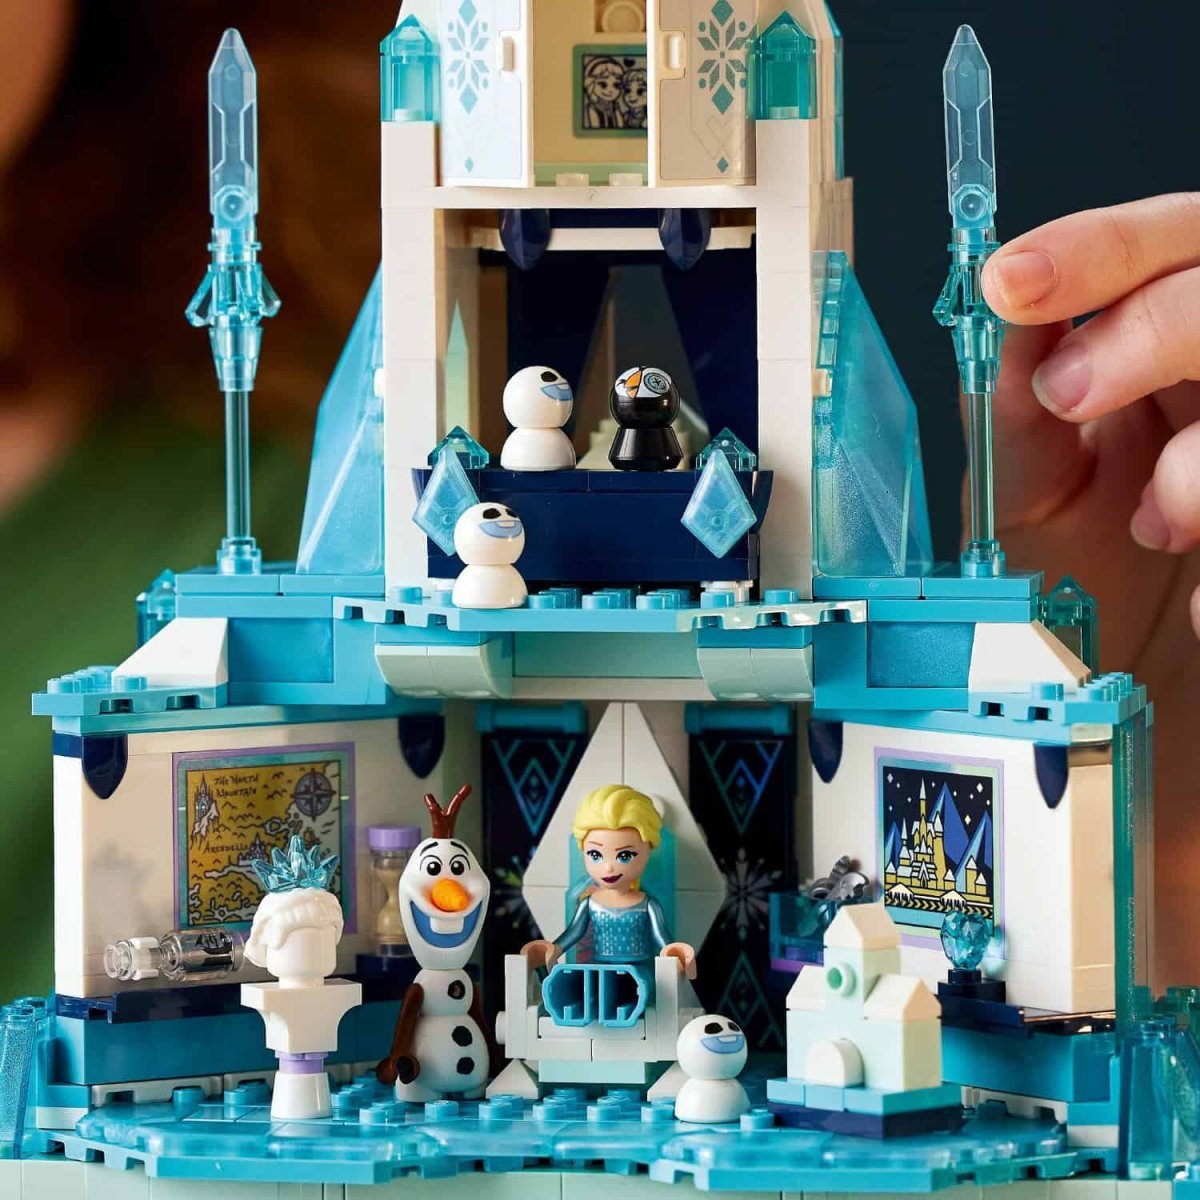 LEGO Disney Princess Волшебный ледяной замок Эльзы